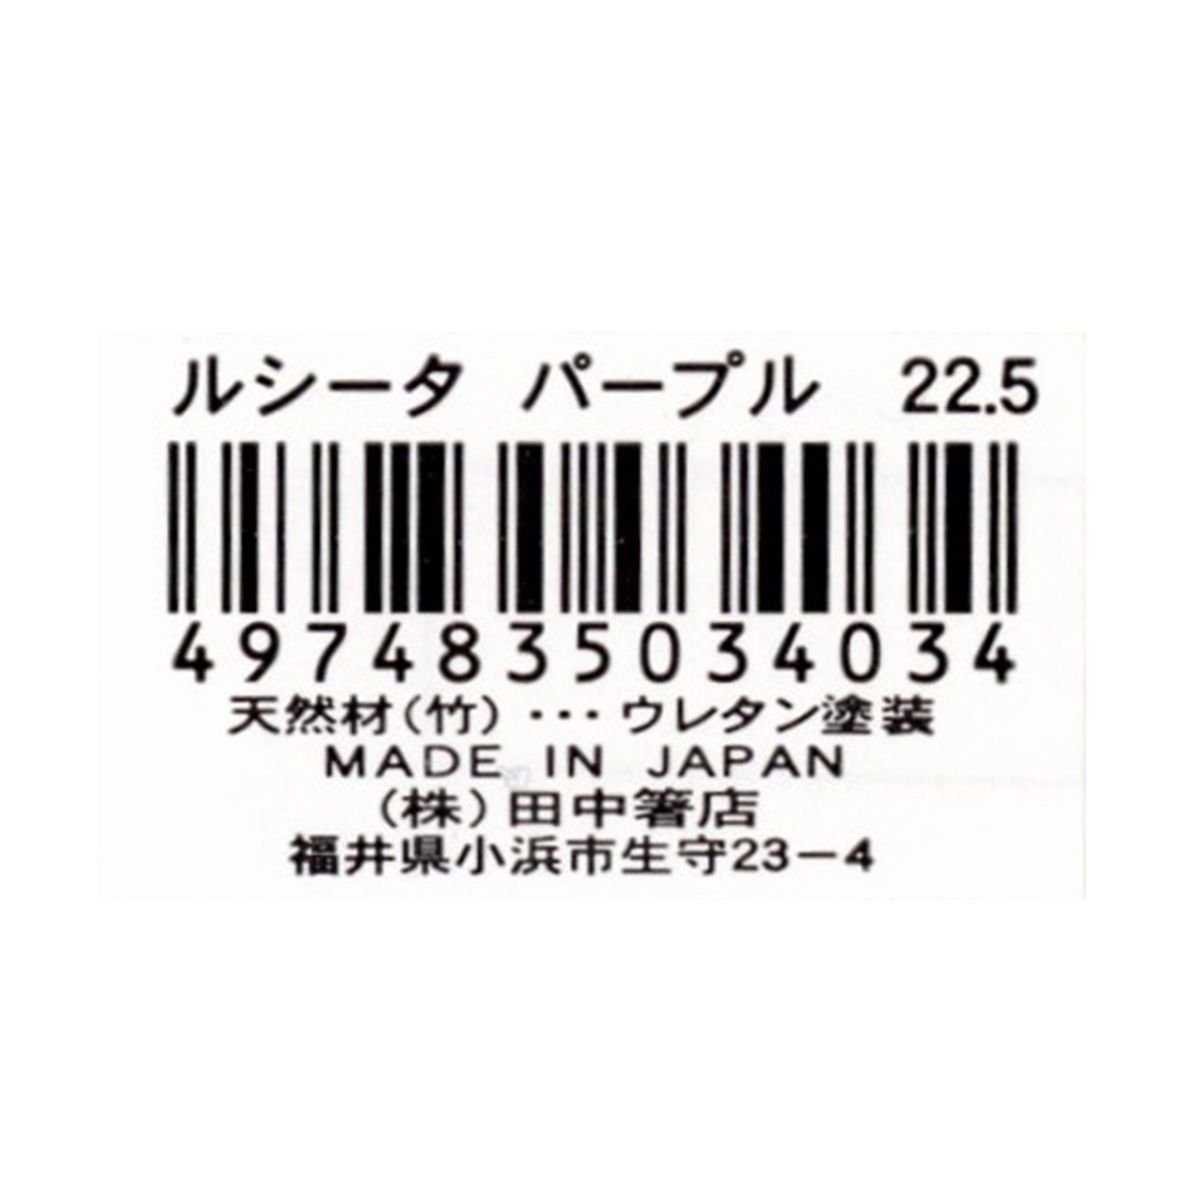 お箸 天然竹製  ルシータ箸 パープル 22.5cm 345941